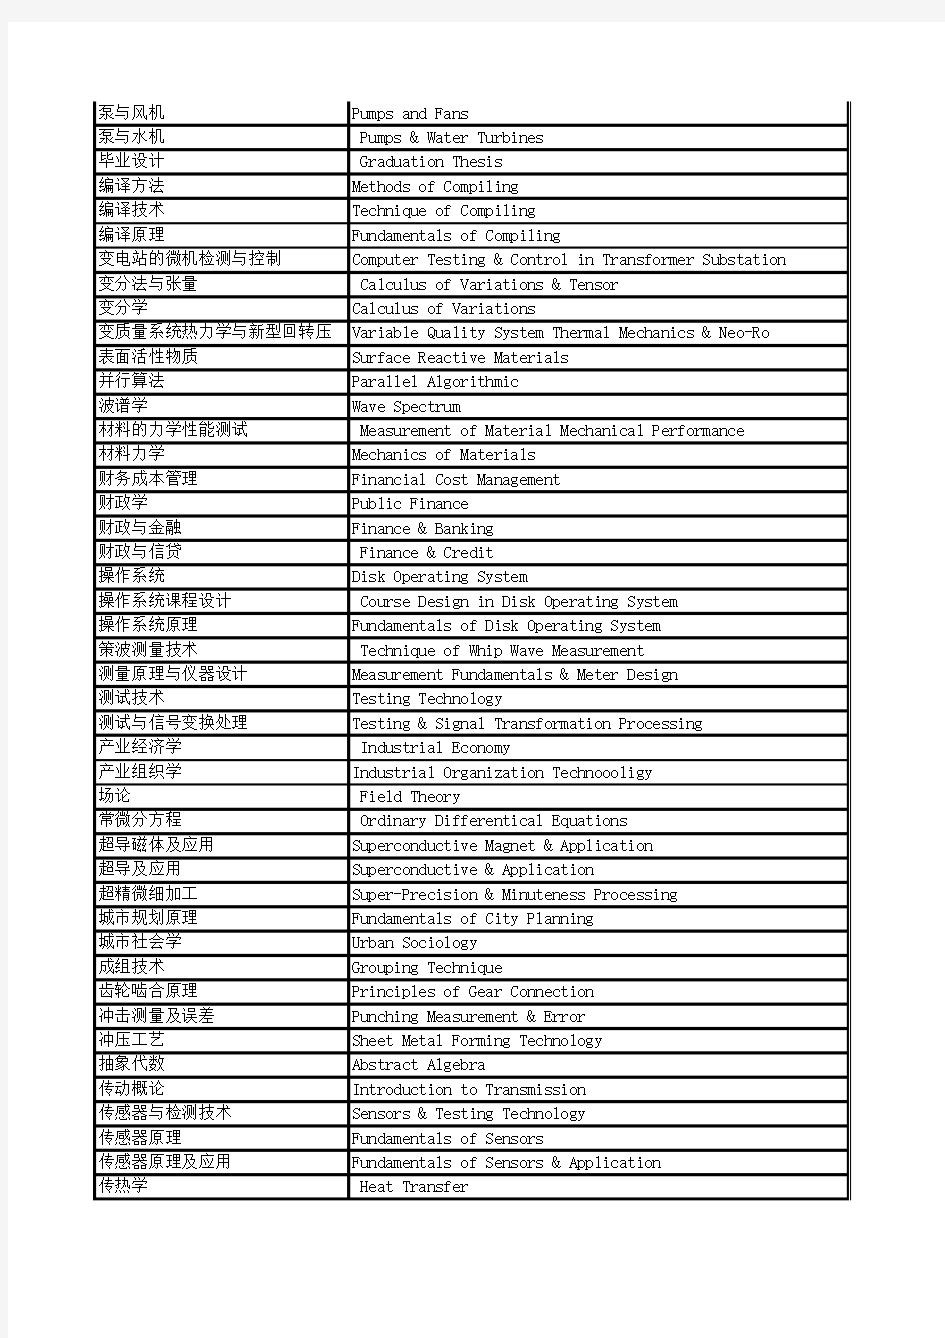 2000门课程翻译参考表